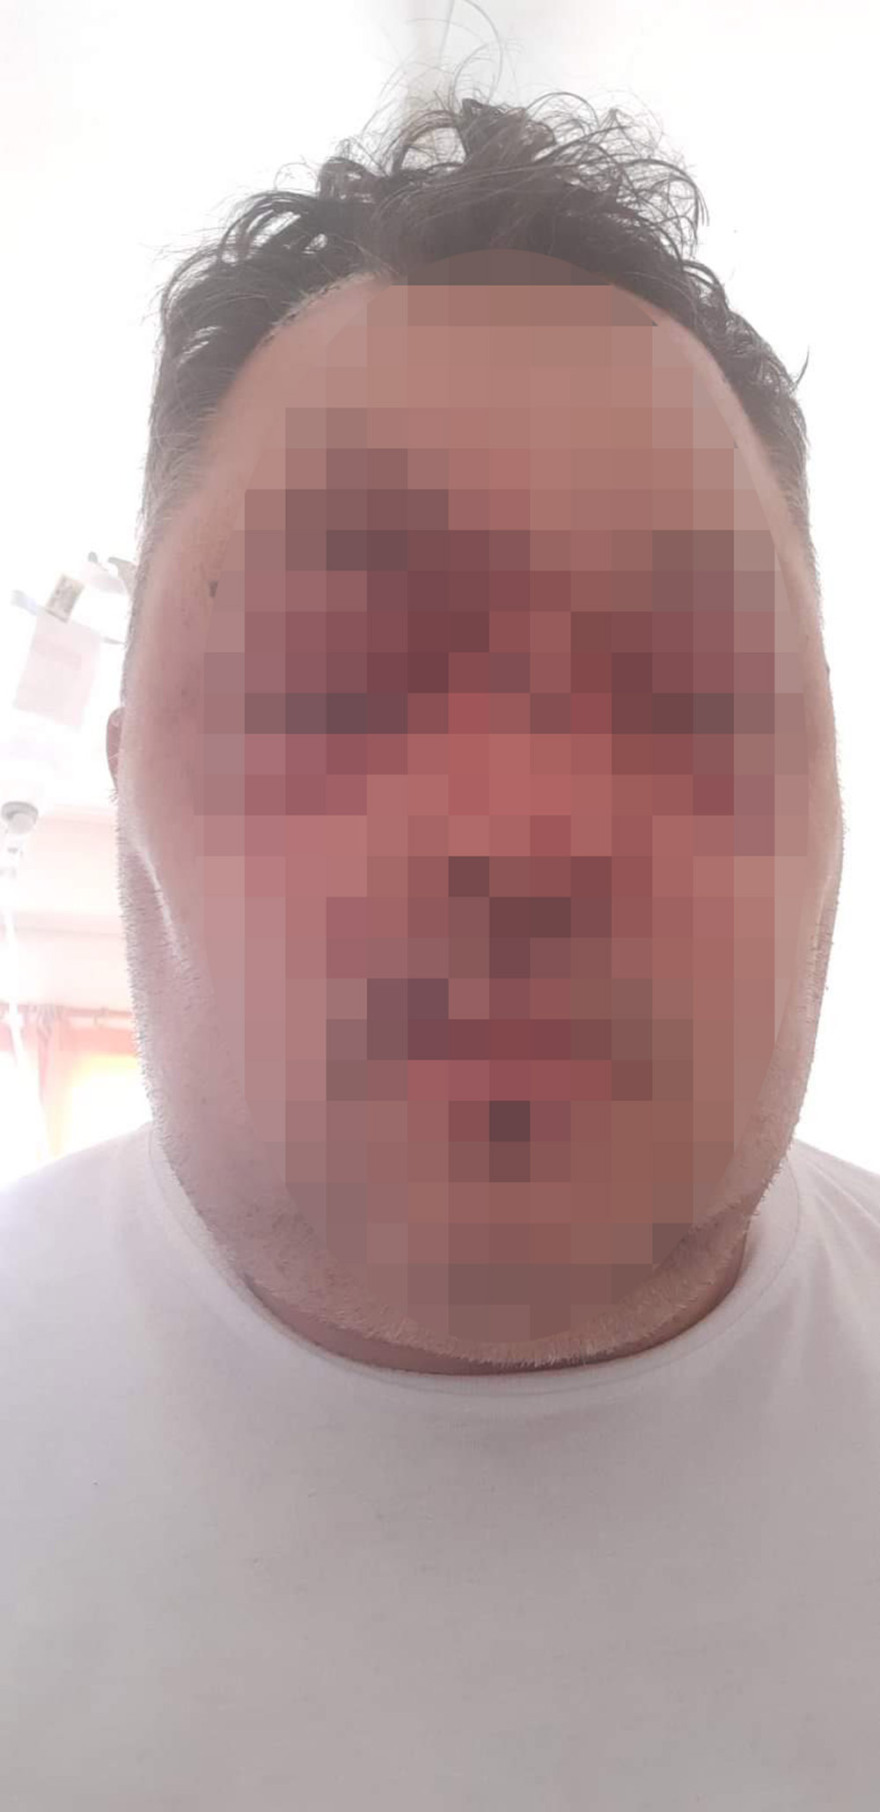 Παξοί: Αλβανός αγρότης σακάτεψε αστυνομικό με σιδερολοστό - ΕΛΛΑΔΑ